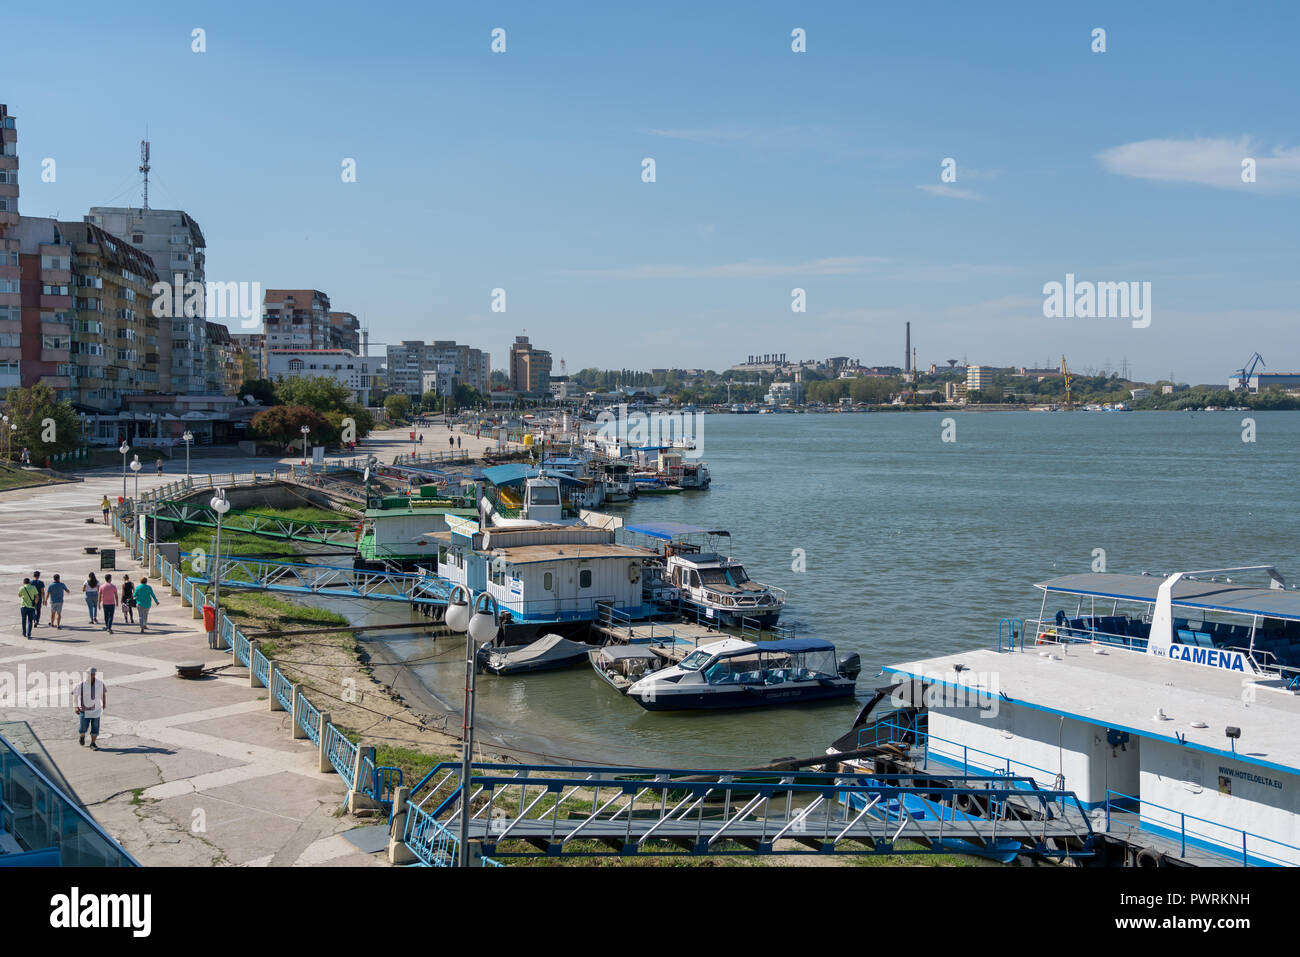 TULCEA DONAUDELTA/RUMÄNIEN - 22. SEPTEMBER: Blick auf den Hafen von Tulcea Donaudelta Rumänien am 22. September 2018. Nicht identifizierte Personen Stockfoto